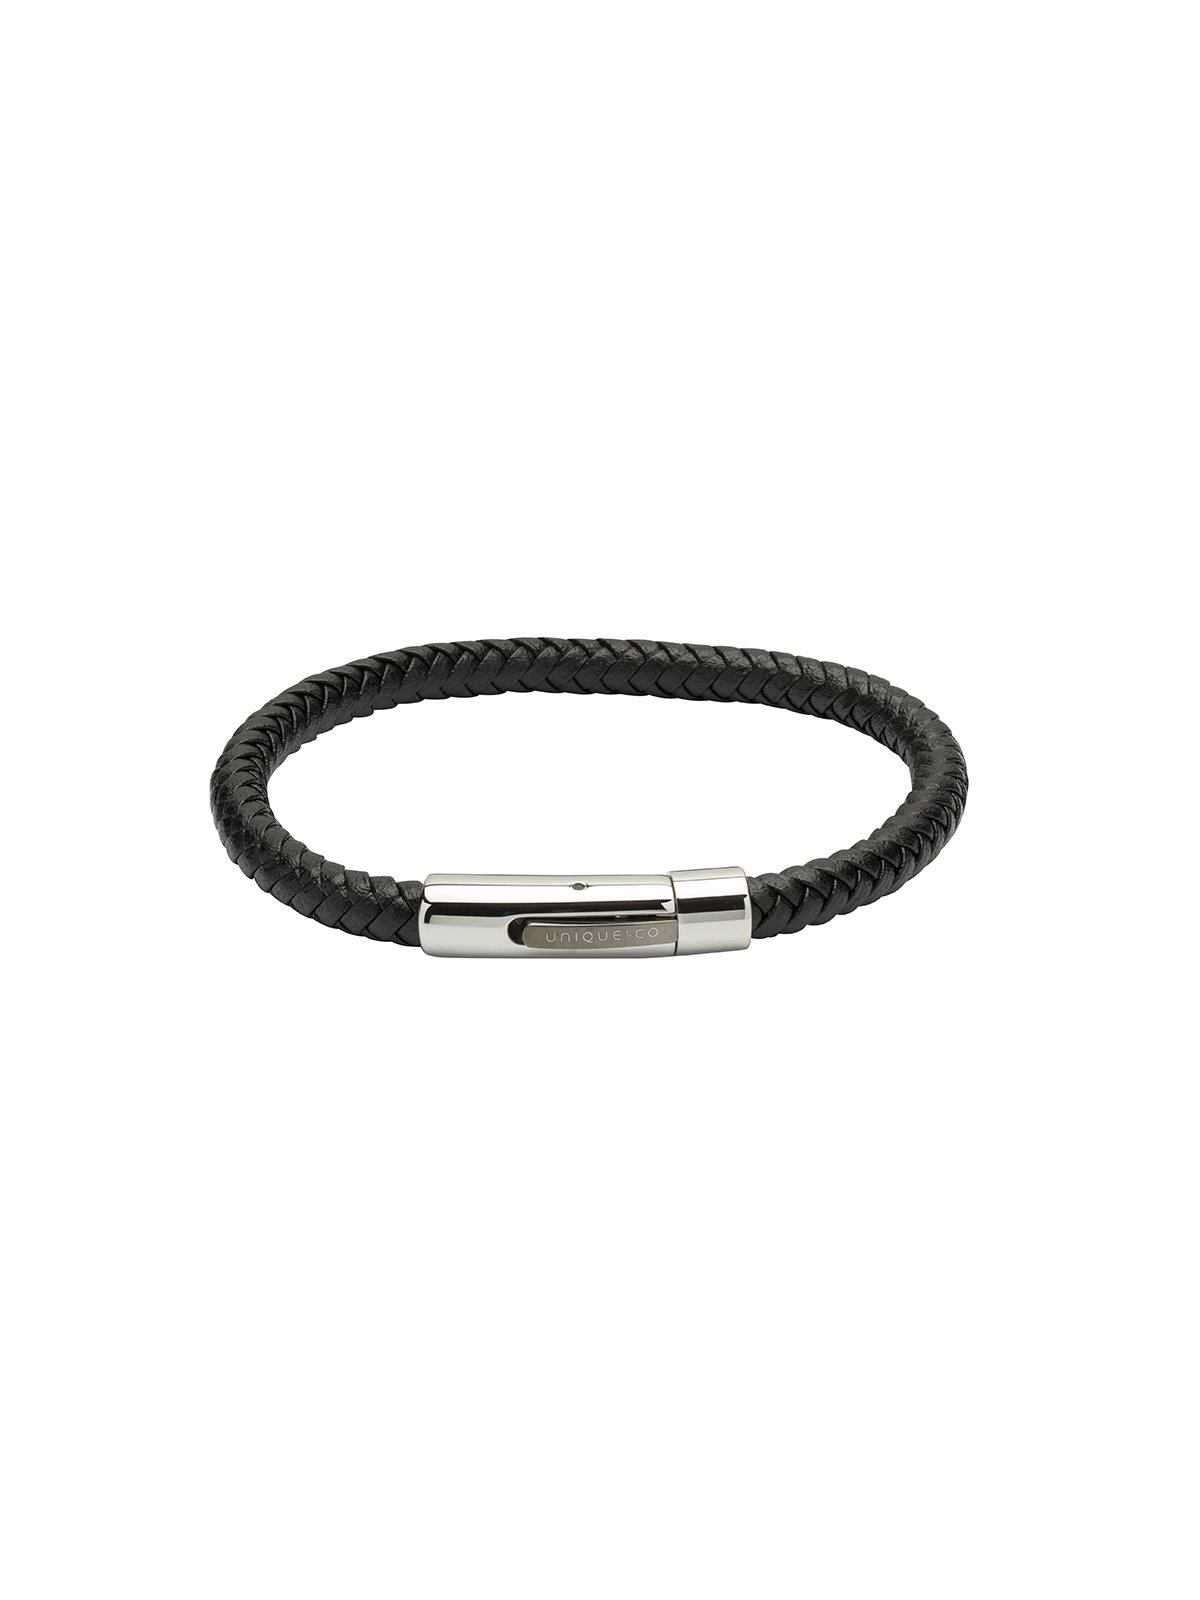 Unique & Co. 21cm Black Leather Bracelet B371BL/21CM